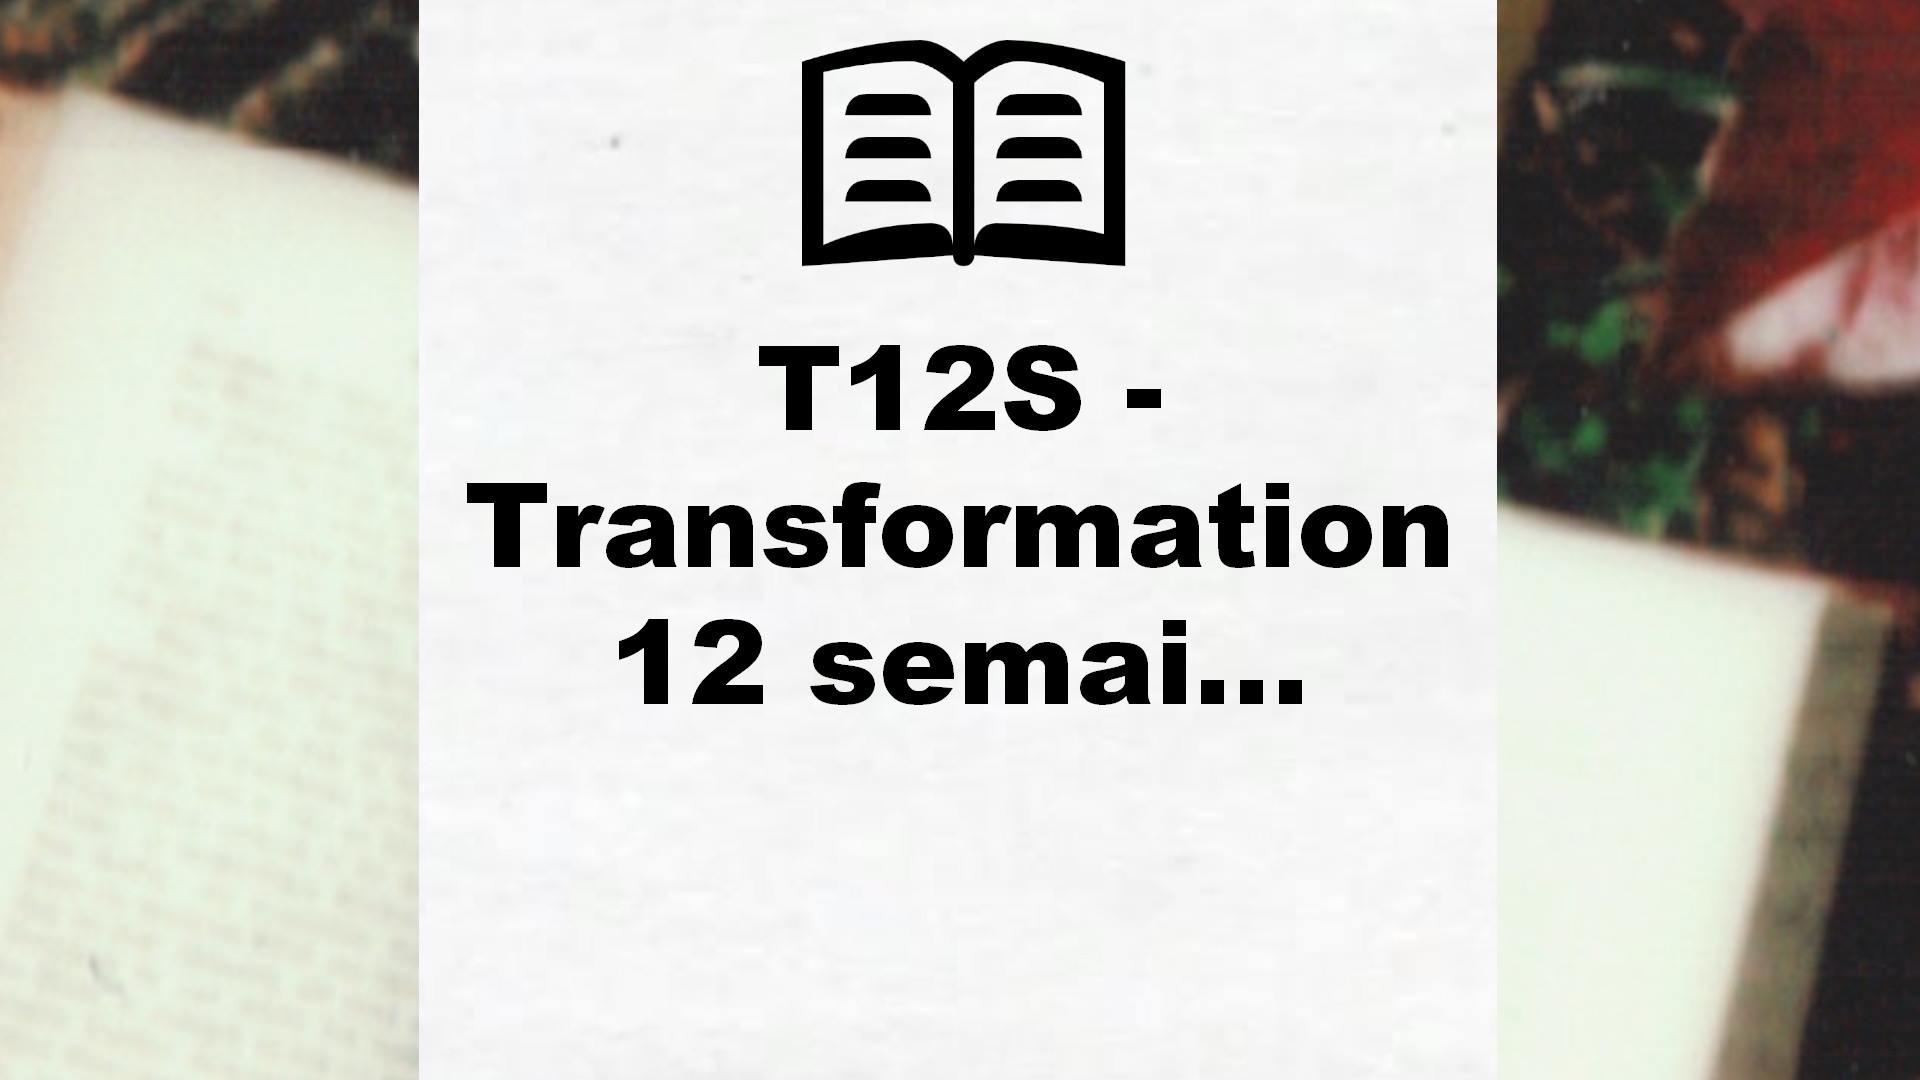 Le livre T12S, transformation en 12 Semaines est là !